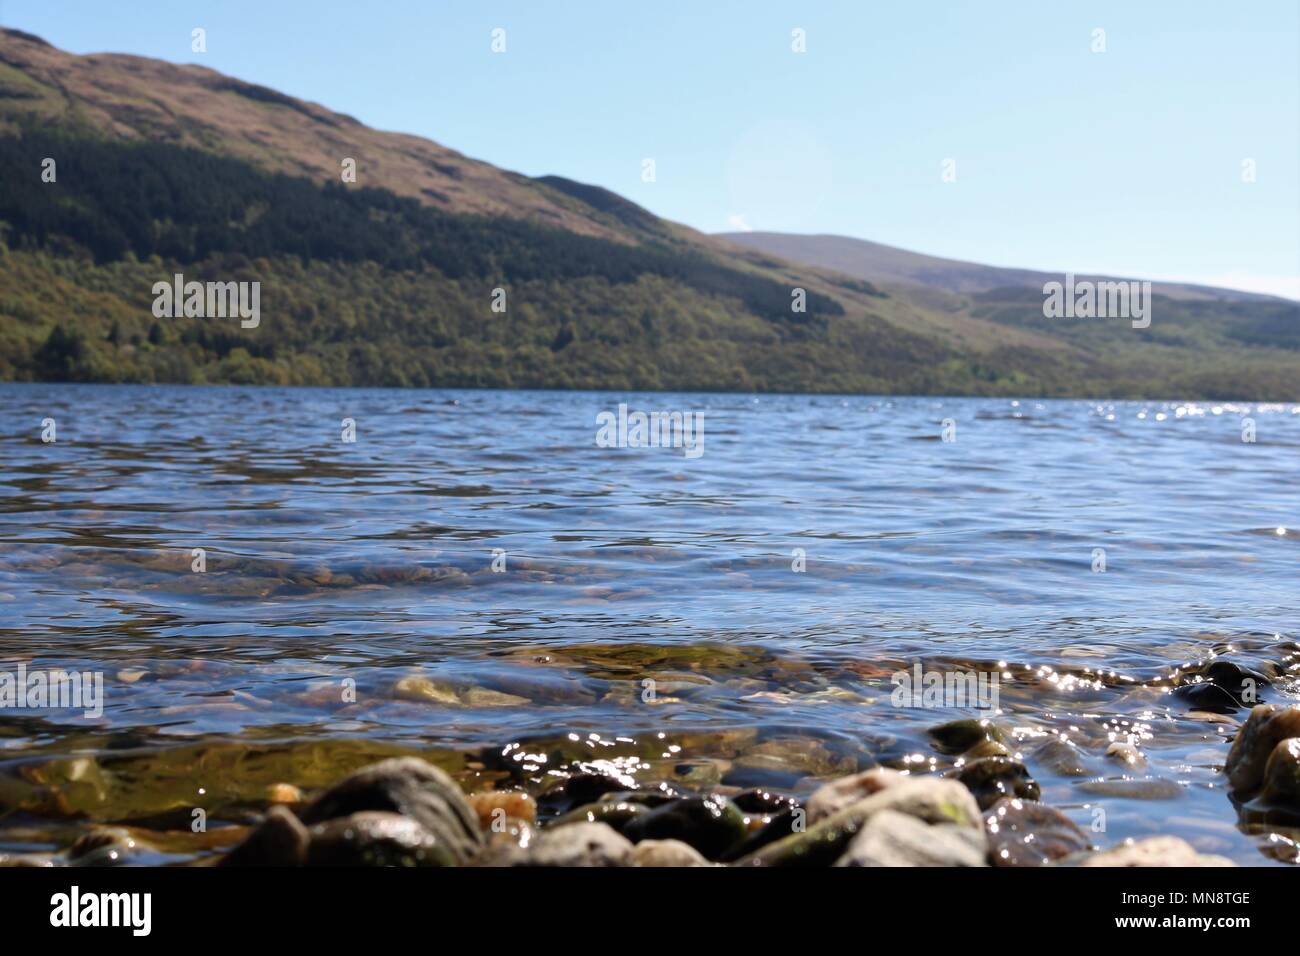 Magnifique Loch Lomond, Ecosse, ROYAUME UNI sur une journée ensoleillée claire montrant l'eau et montagnes dans une vue à couper le souffle. Une attraction touristique populaire. Banque D'Images